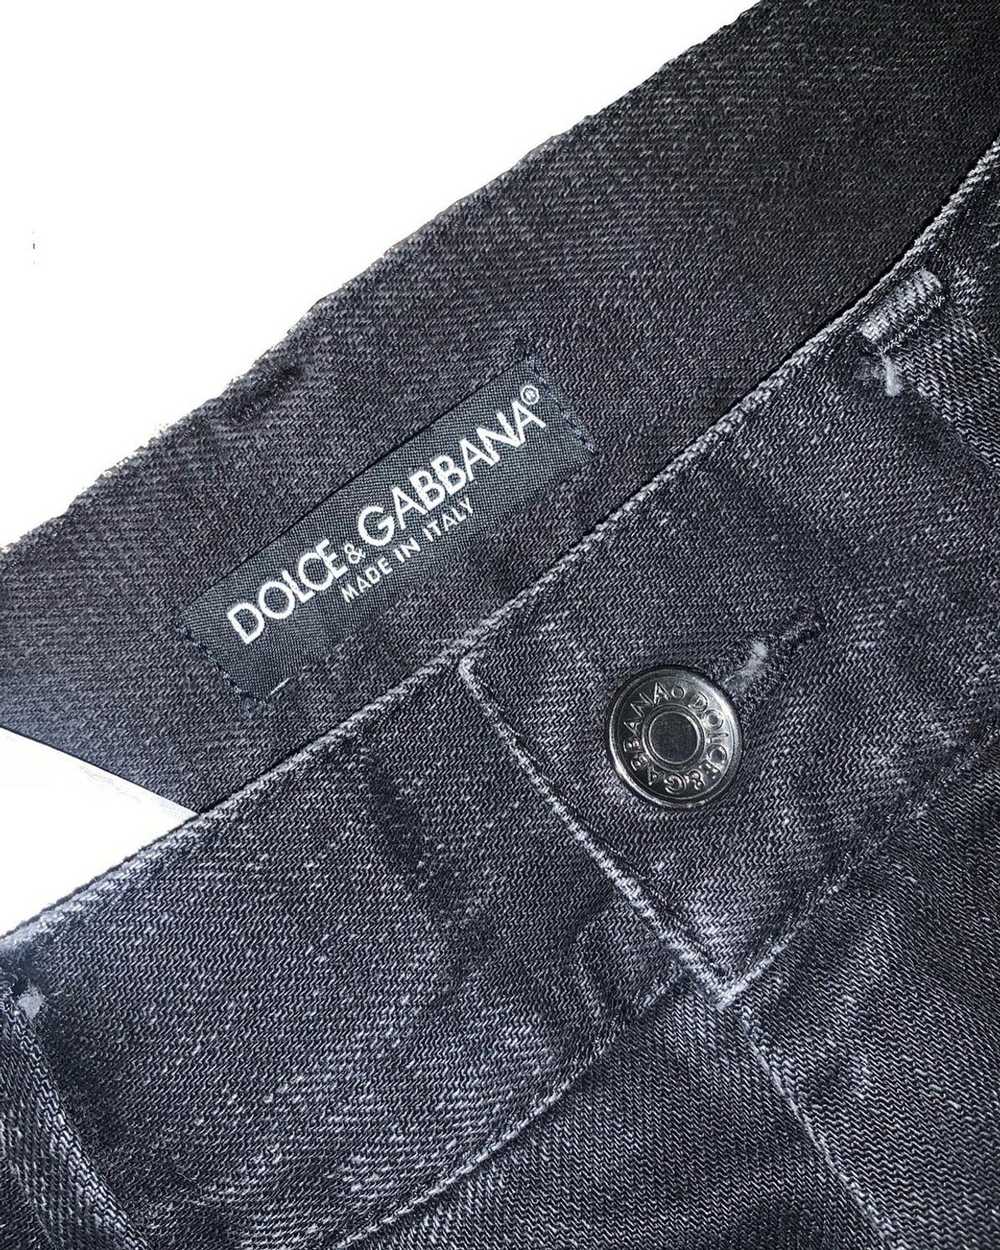 Dolce & Gabbana Dolce & Gabbana washed black dist… - image 3